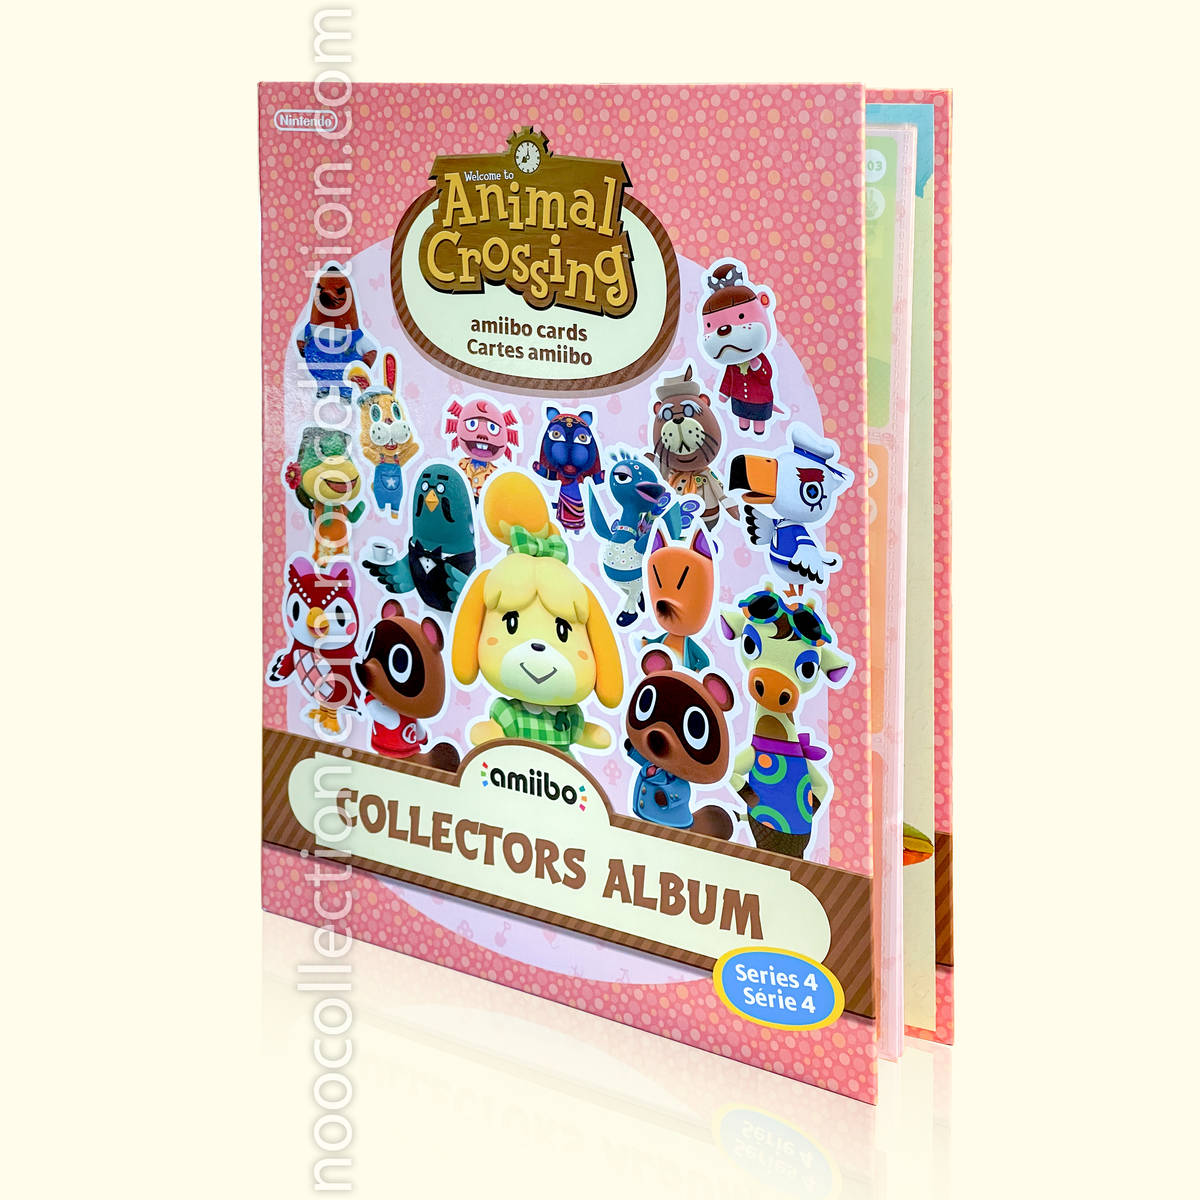 Album Collector de Cartes amiibo Animal Crossing Série 5 à 8,99€